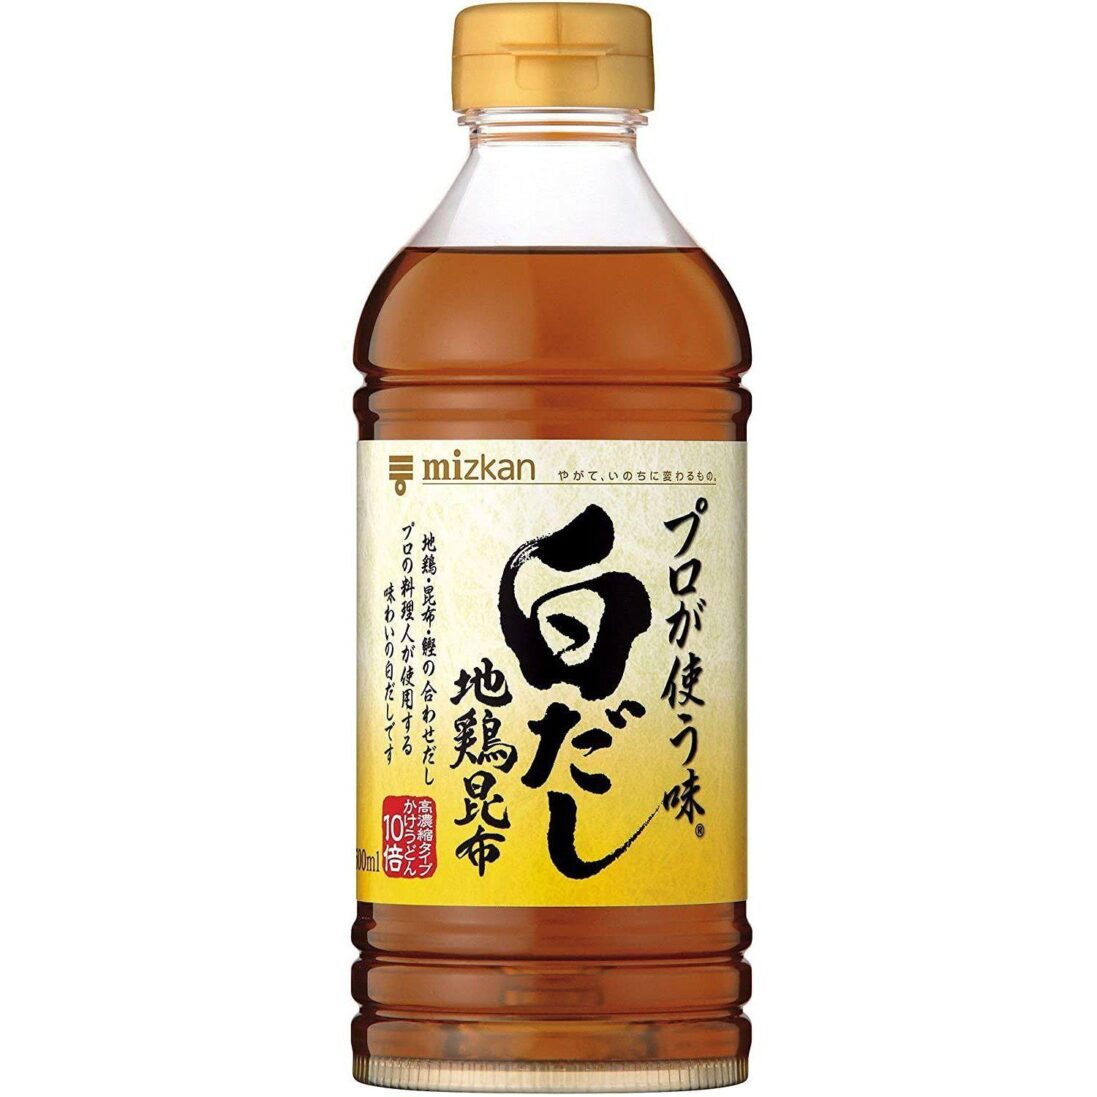 Mizkan-Shiro-Dashi-Sauce-Professional-Taste-500ml-Japanese-Taste_997dd75e-6125-4814-8f50-ad54a5e531aa_2048x.jpg